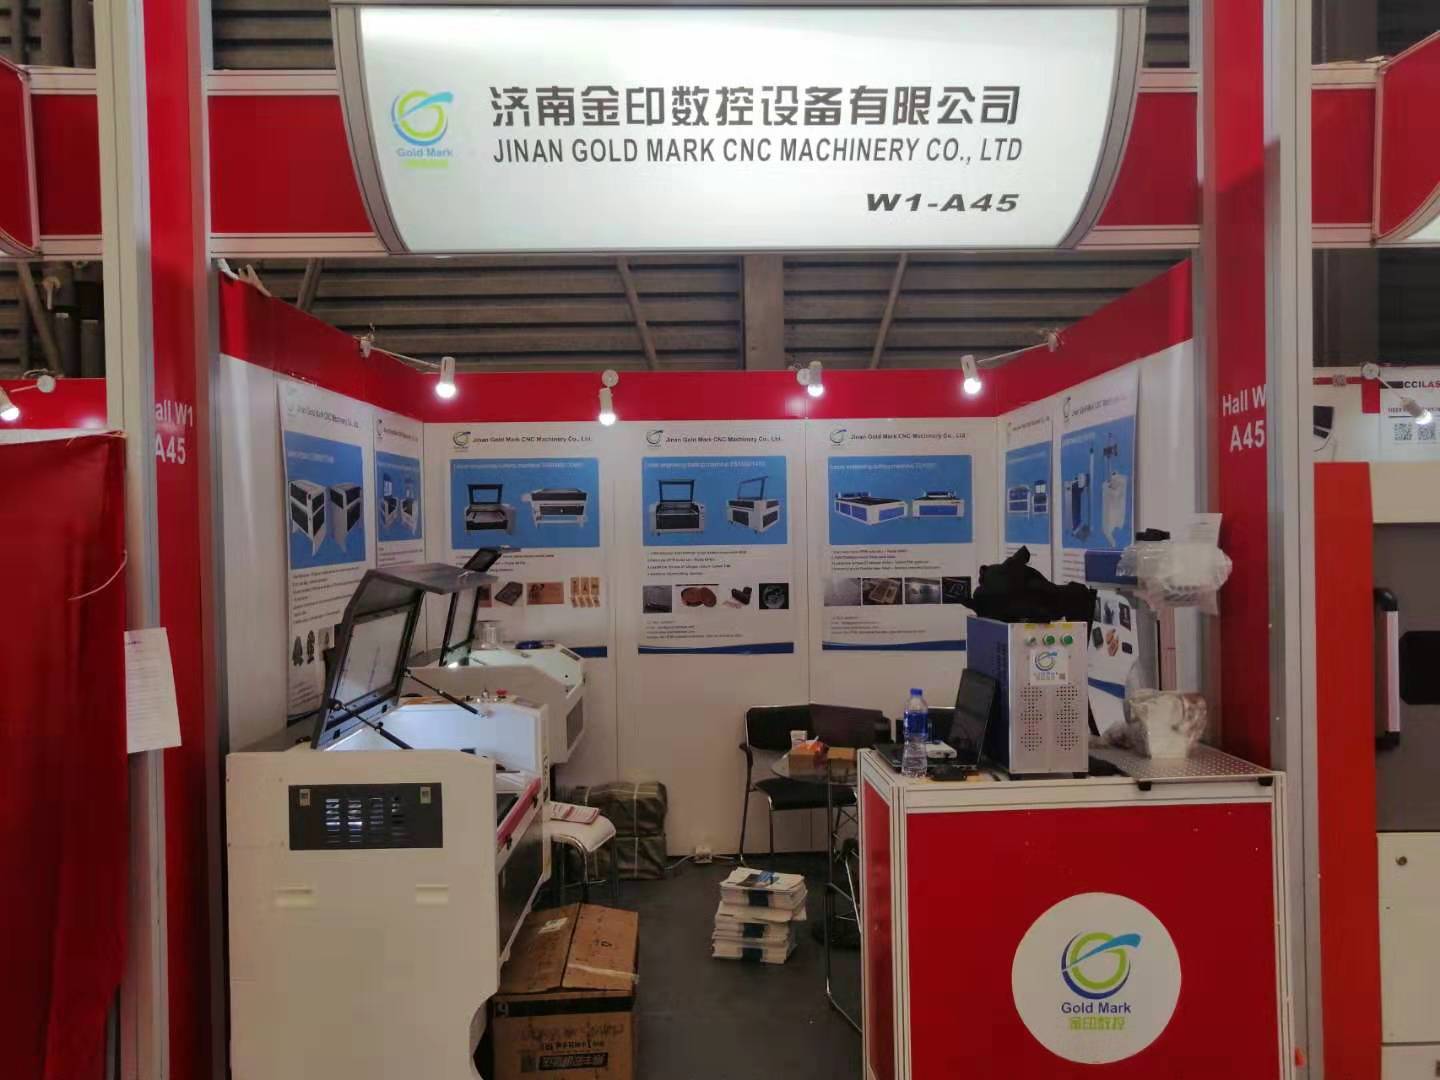 Jinan marque d'or CNC machine co., Ltd.with star products a dévoilé l'exposition de logos publicitaires SIGN CHINA 2019.